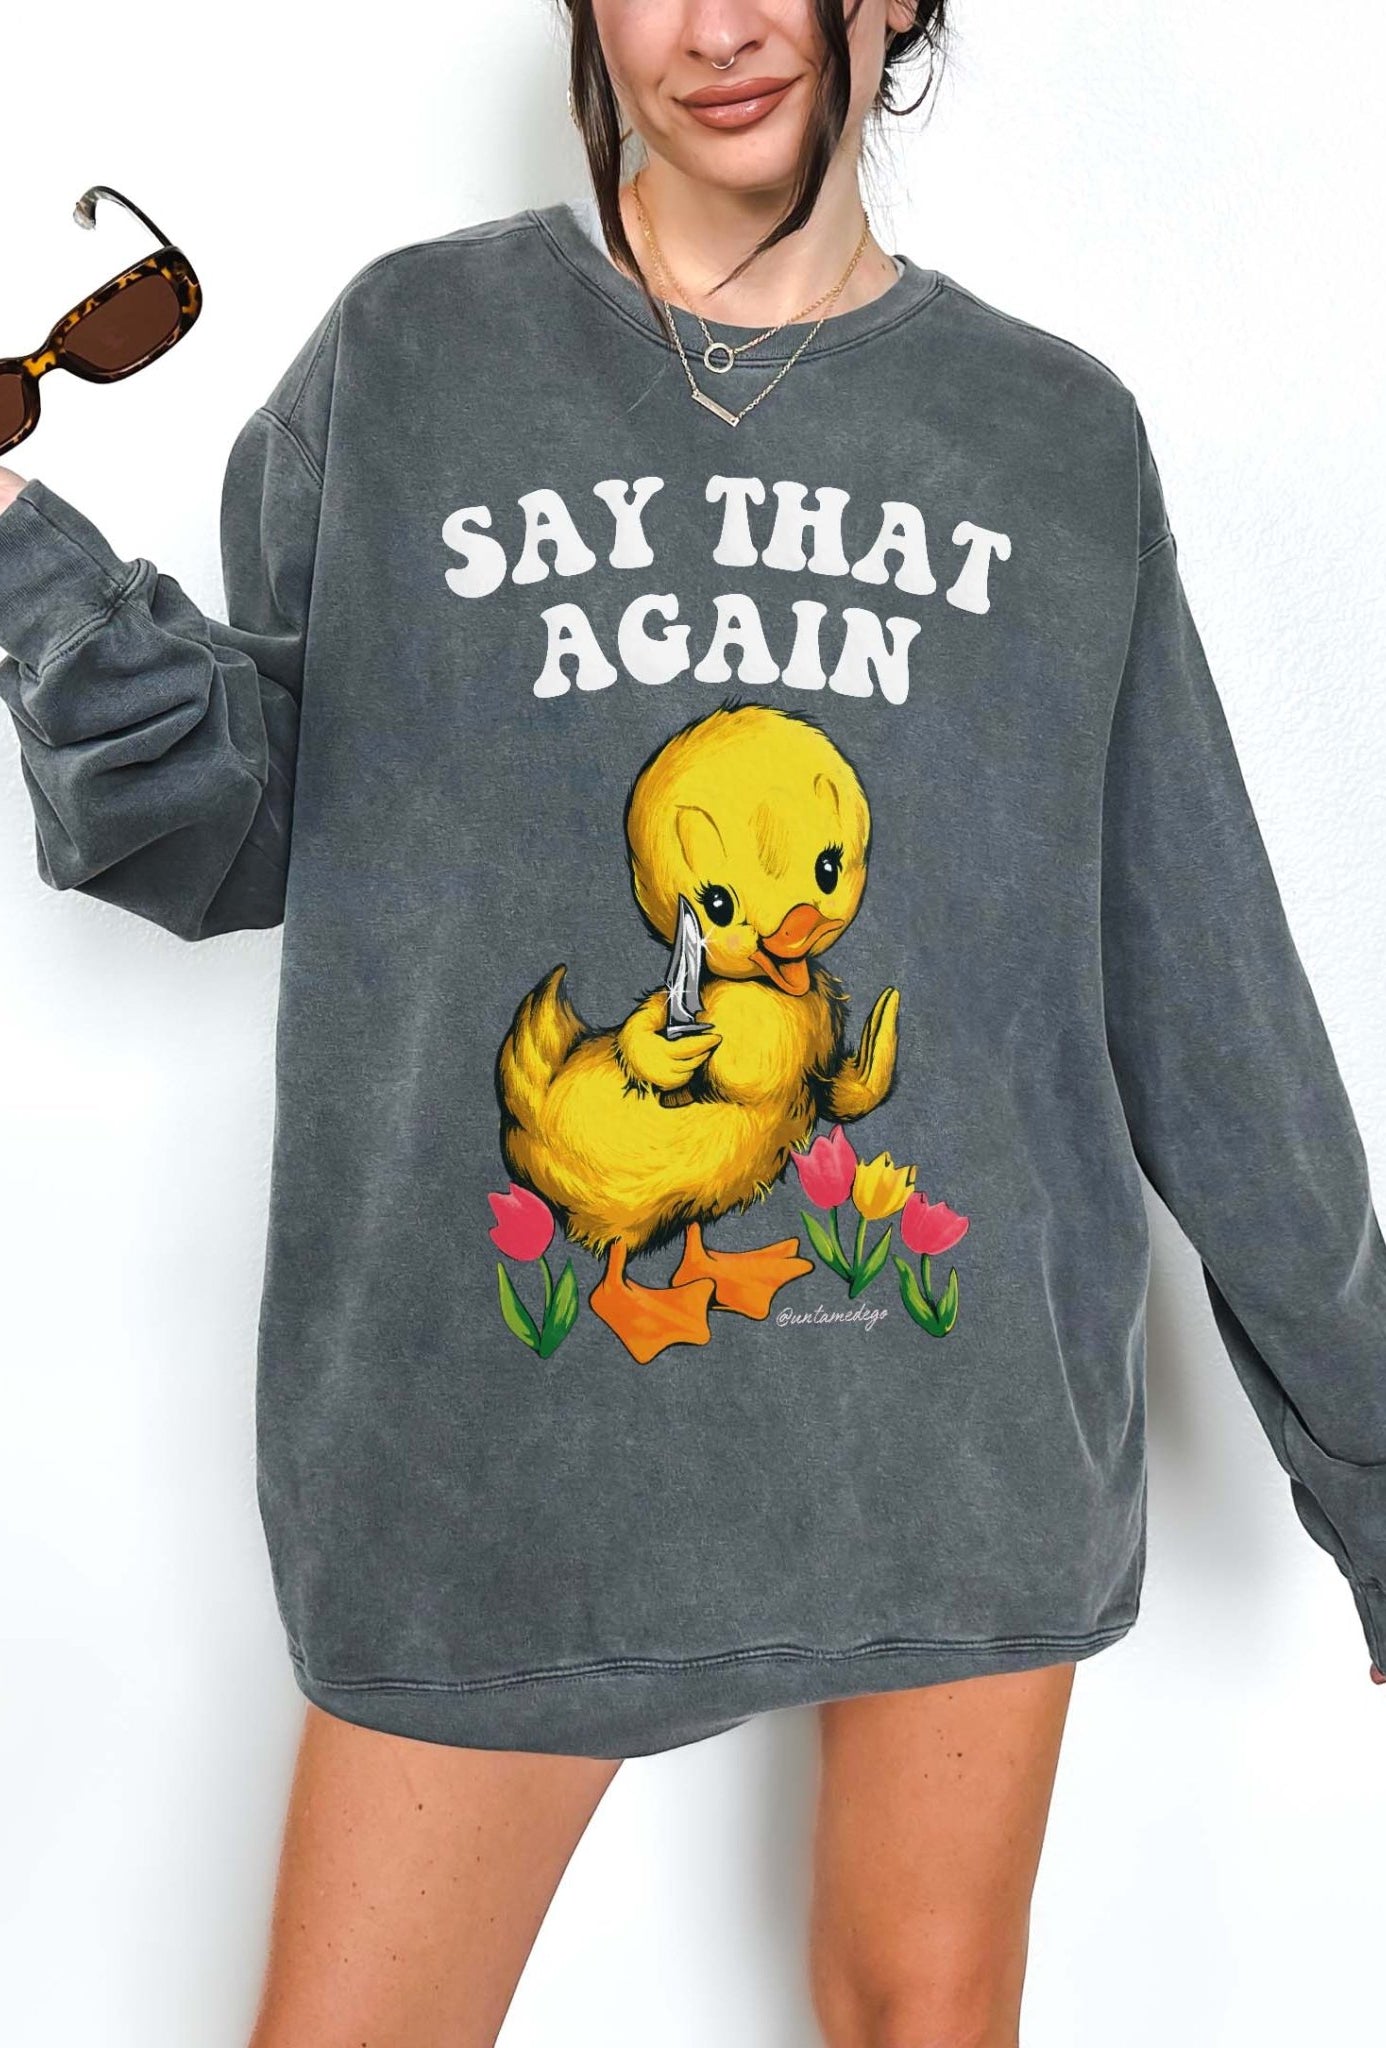 Say That Again Ducky Crew Sweatshirt - UntamedEgo LLC.